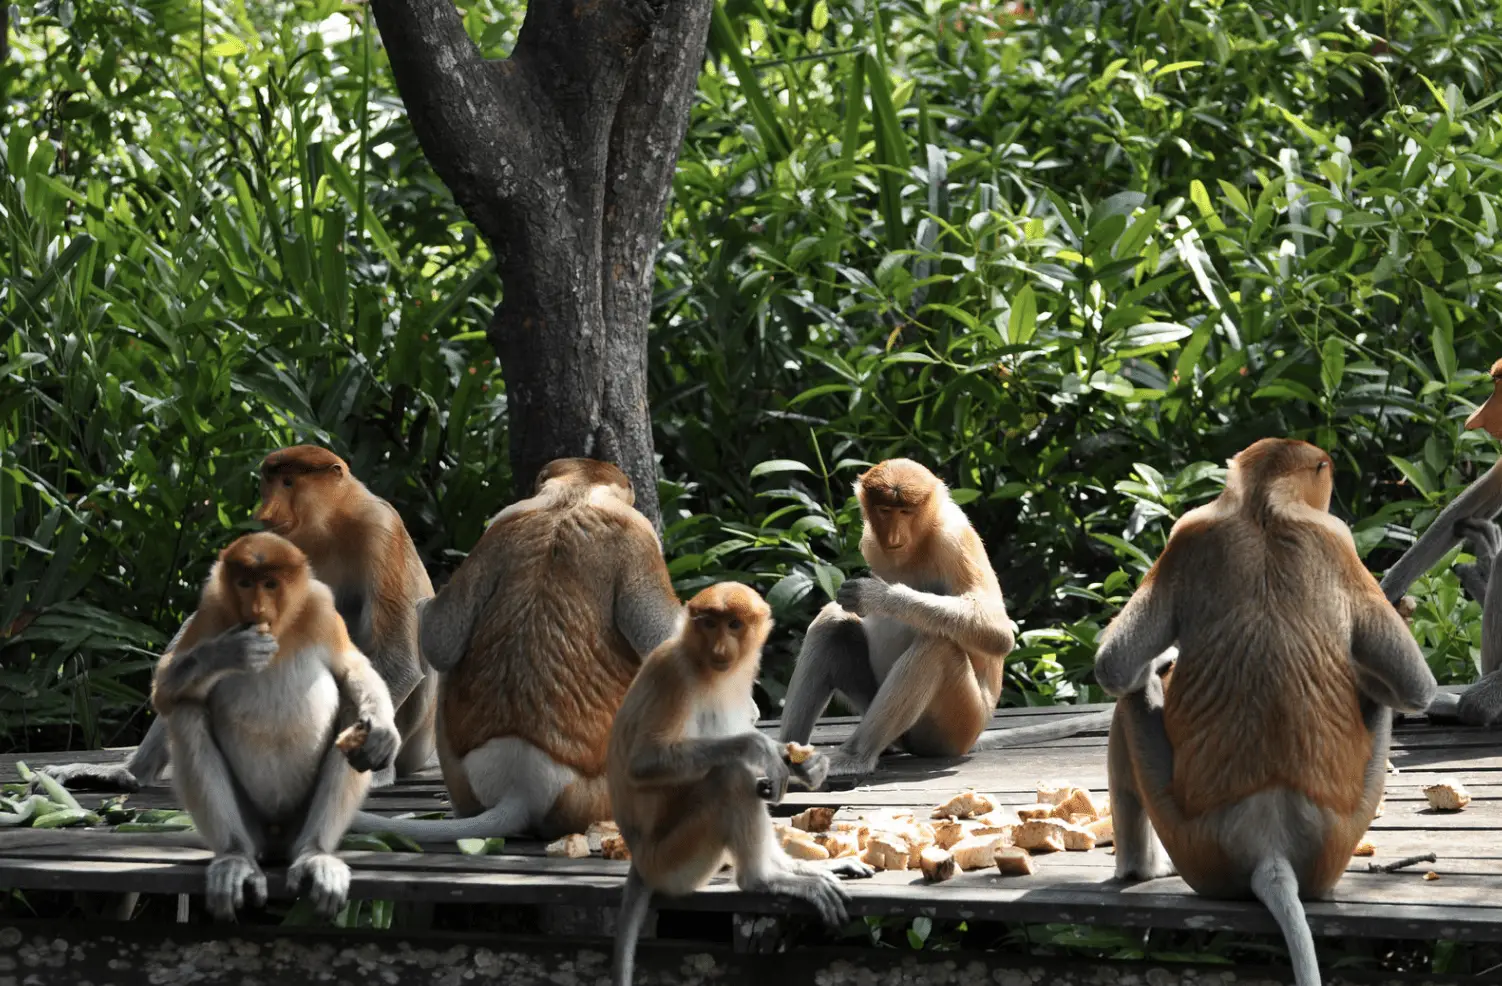 vervet monkey-group eating